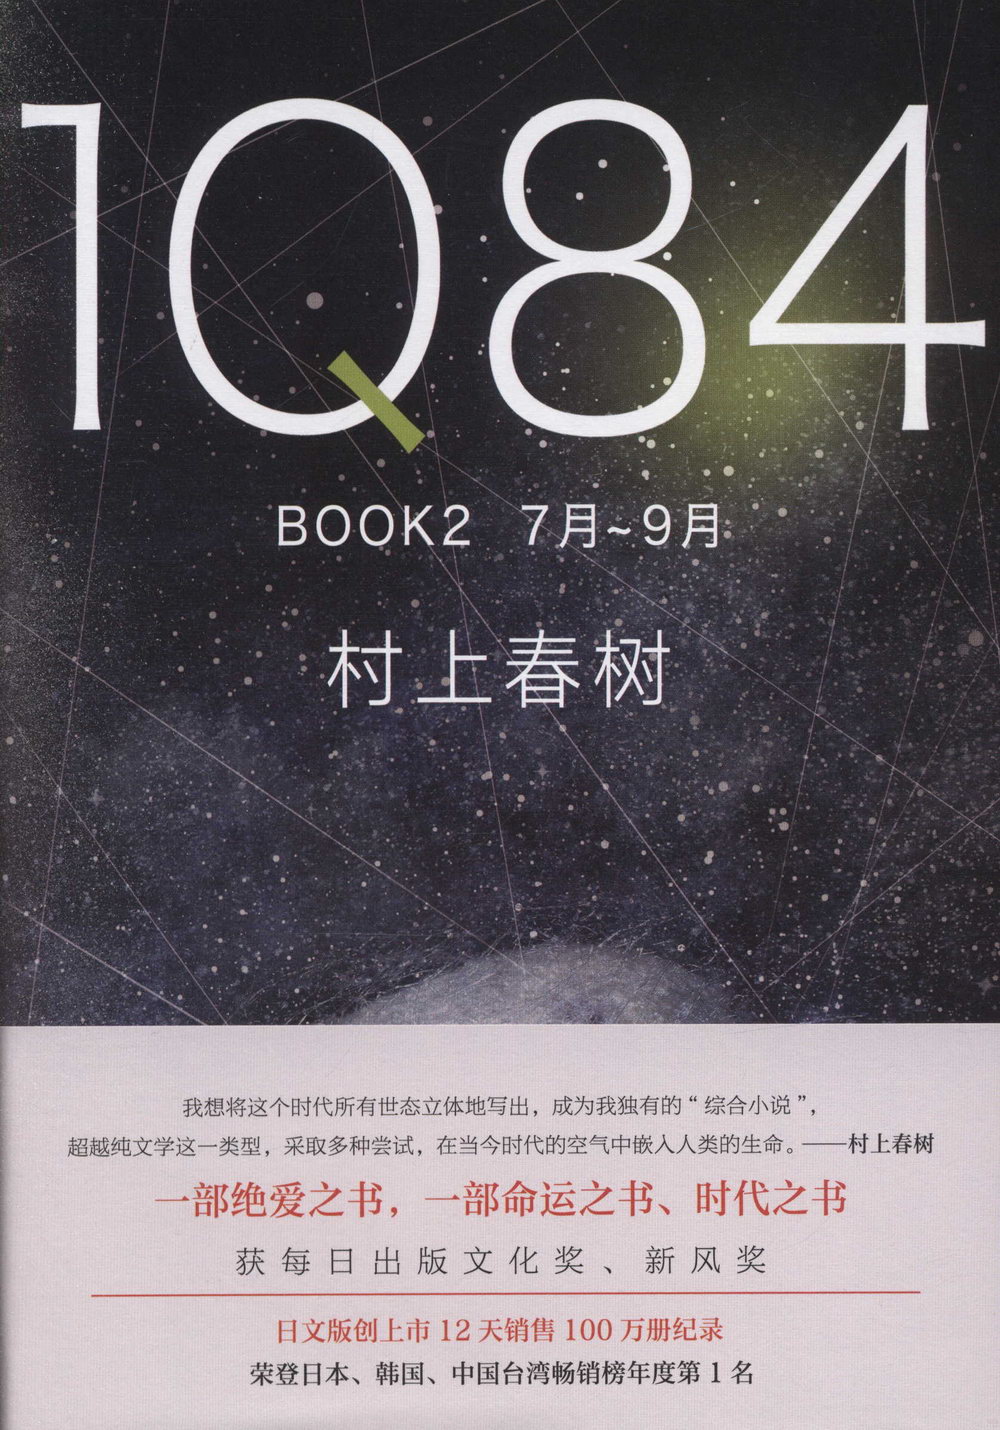 1Q84 BOOK2（7月-9月）